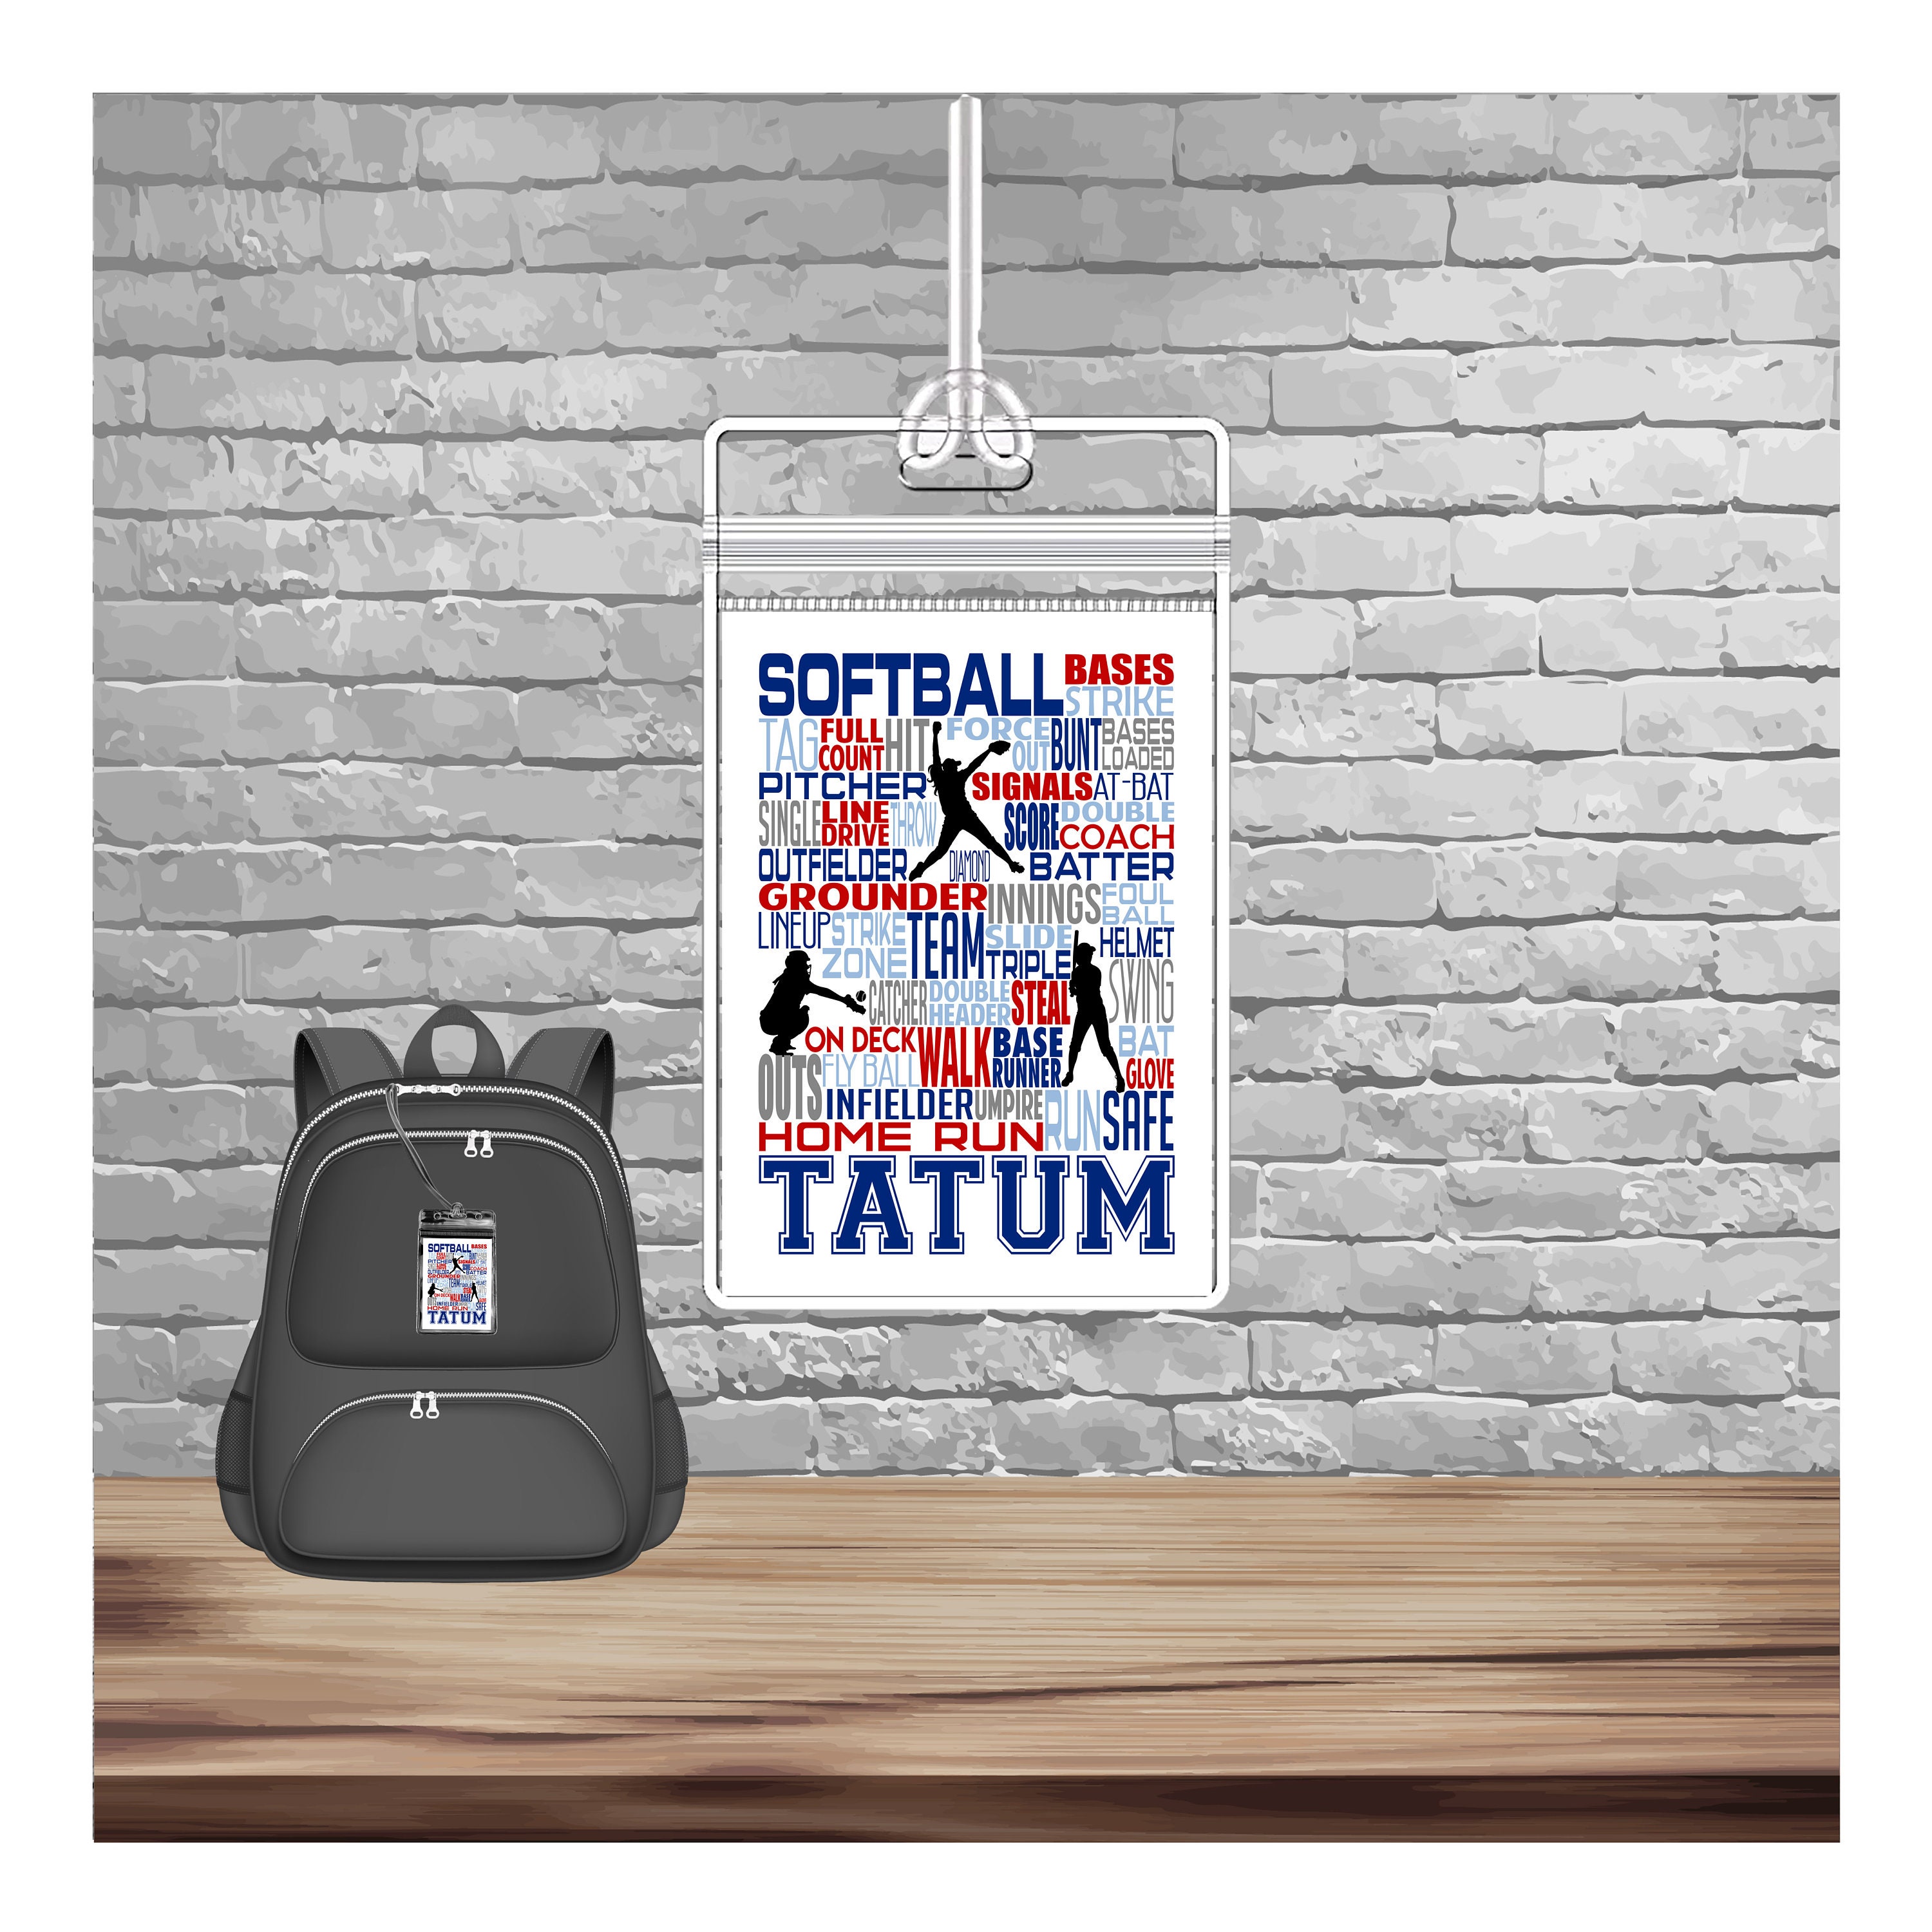 Softball Bag Tag FREE SHIPPING, Softball Luggage Tags, Custom Bag